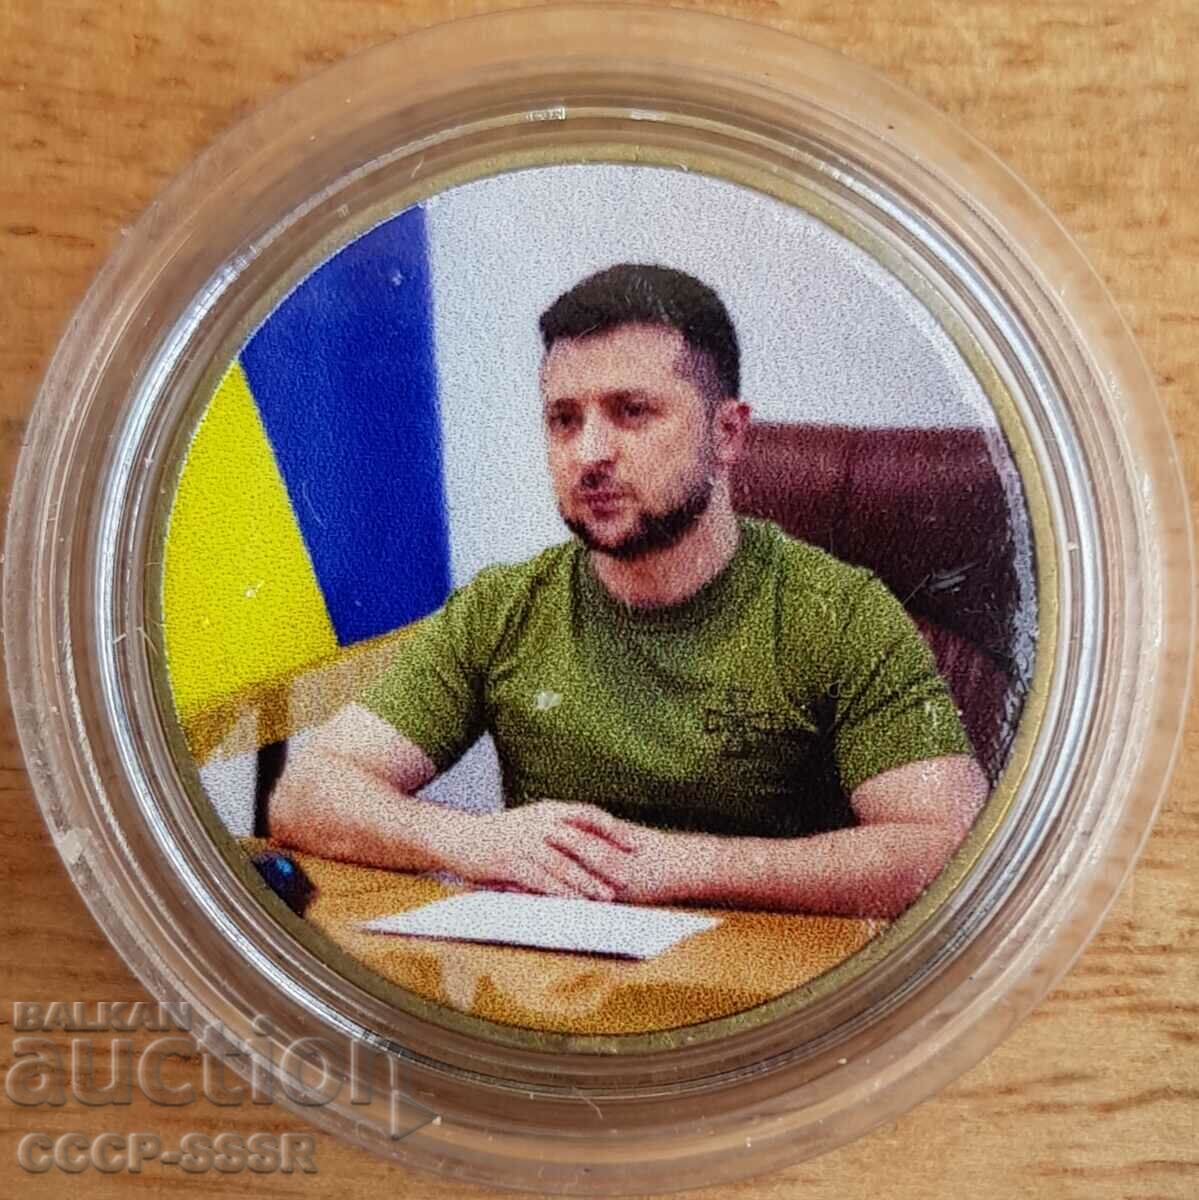 Ukraine 1 χαίτη, Zelensky V.A. President Ukraini, περιορισμένη έκδοση